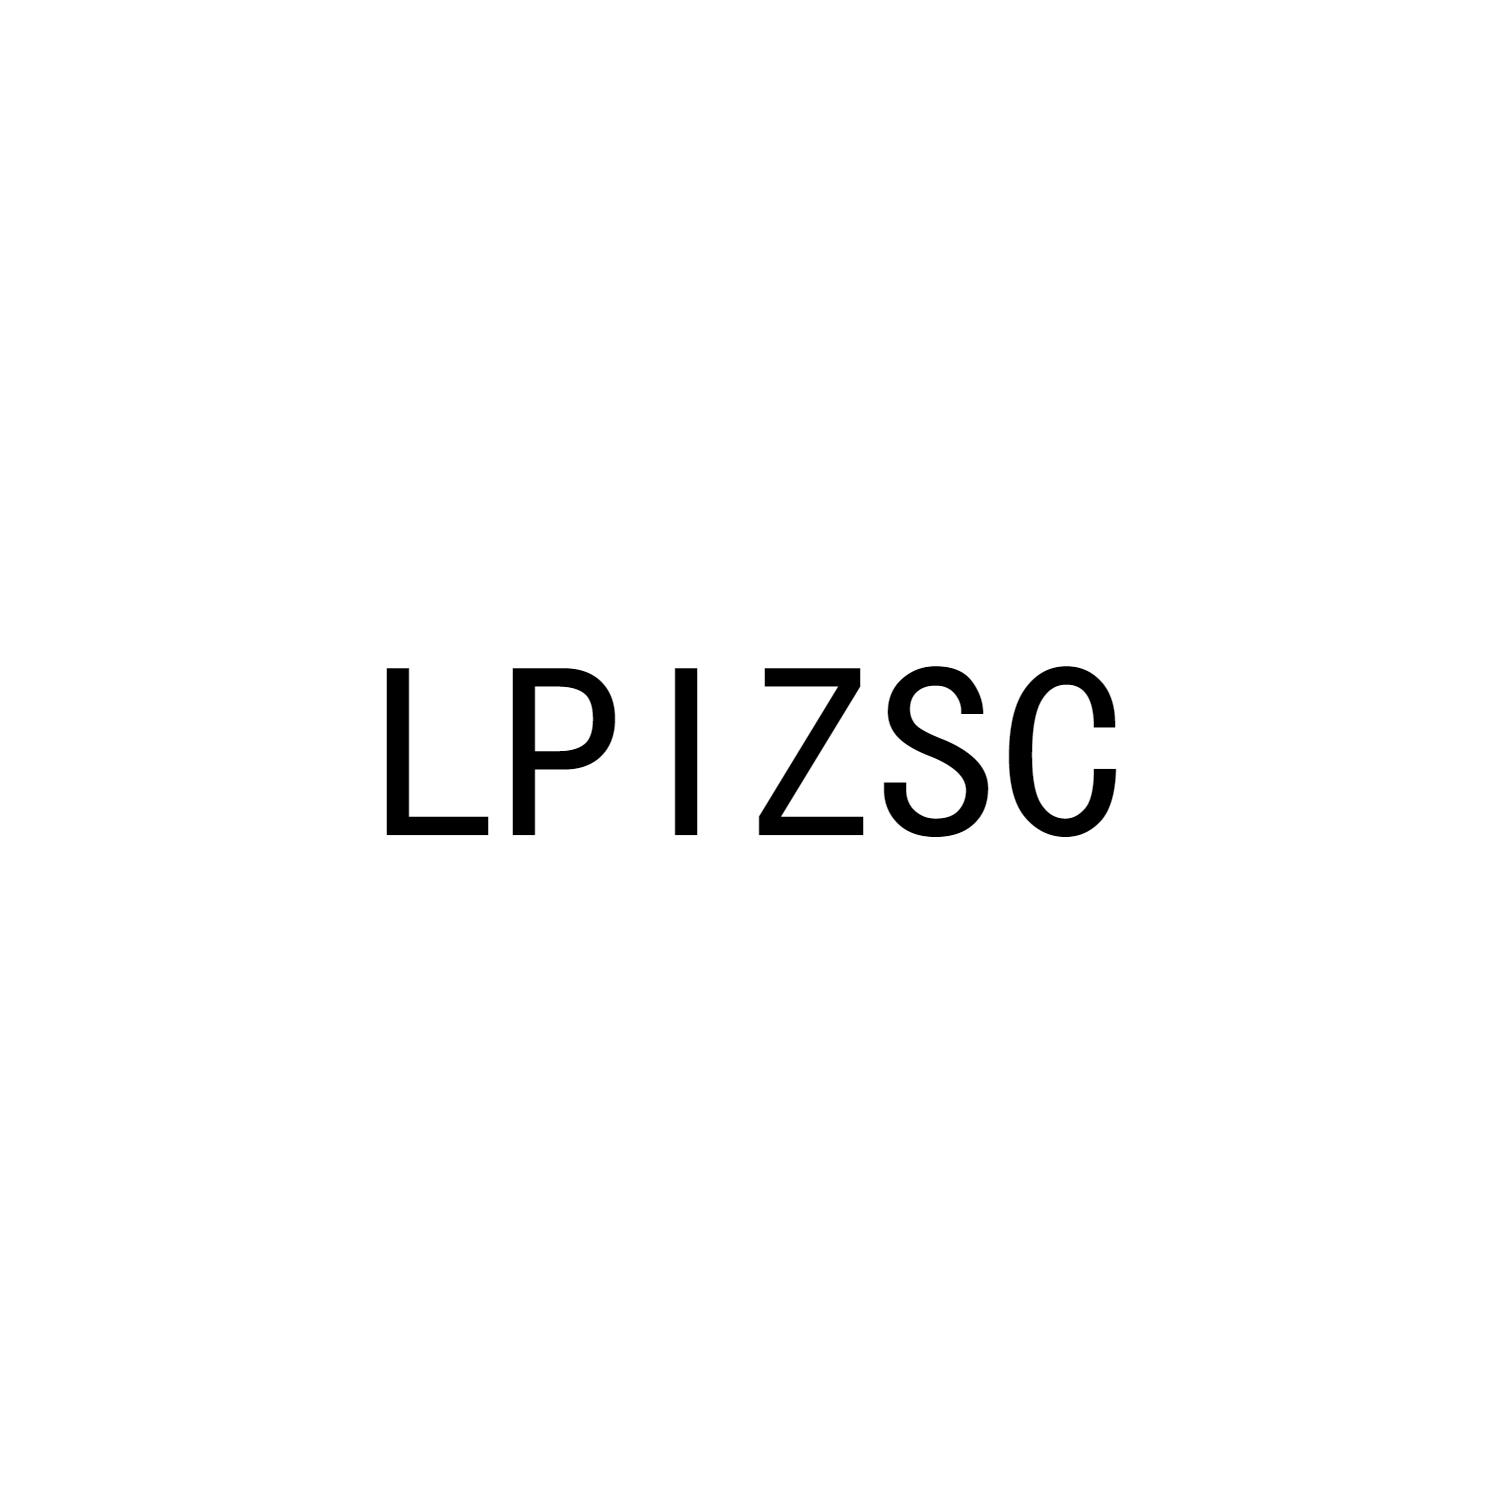 LPIZSC